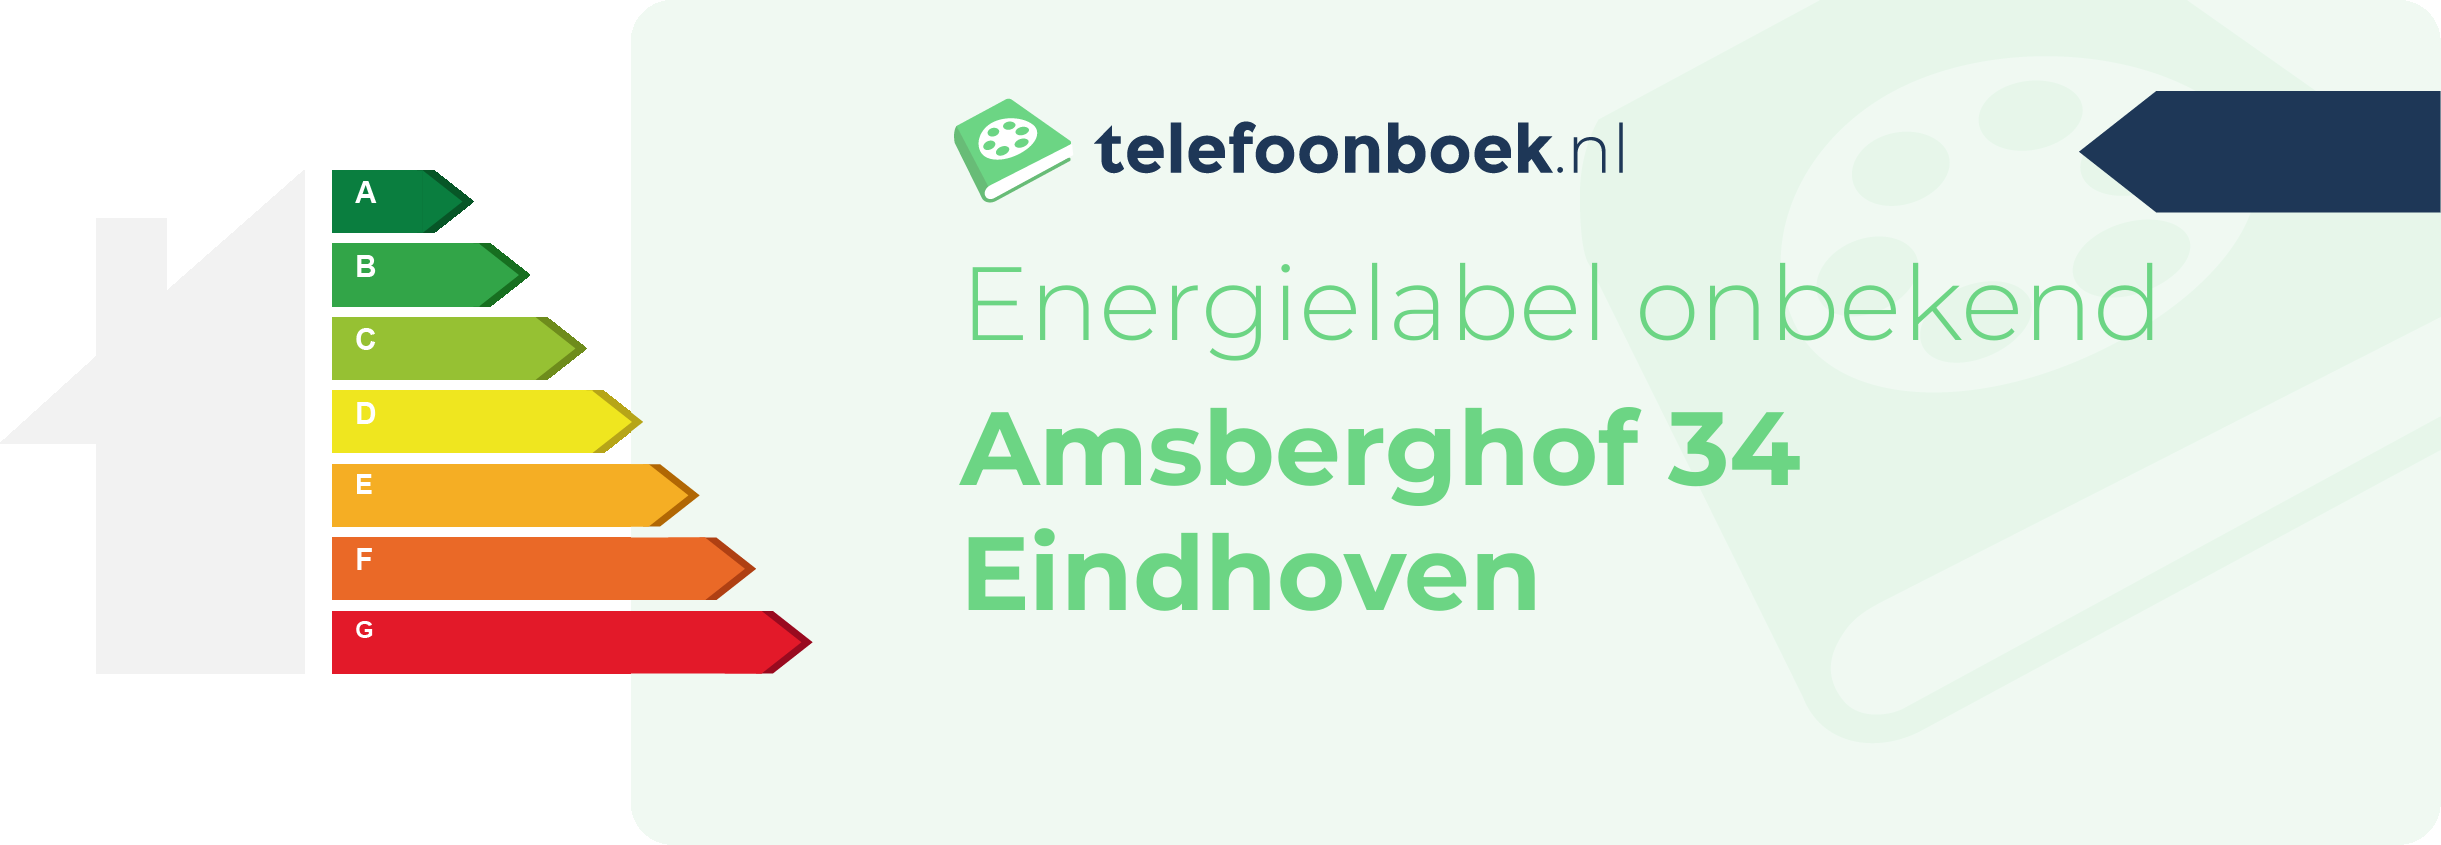 Energielabel Amsberghof 34 Eindhoven